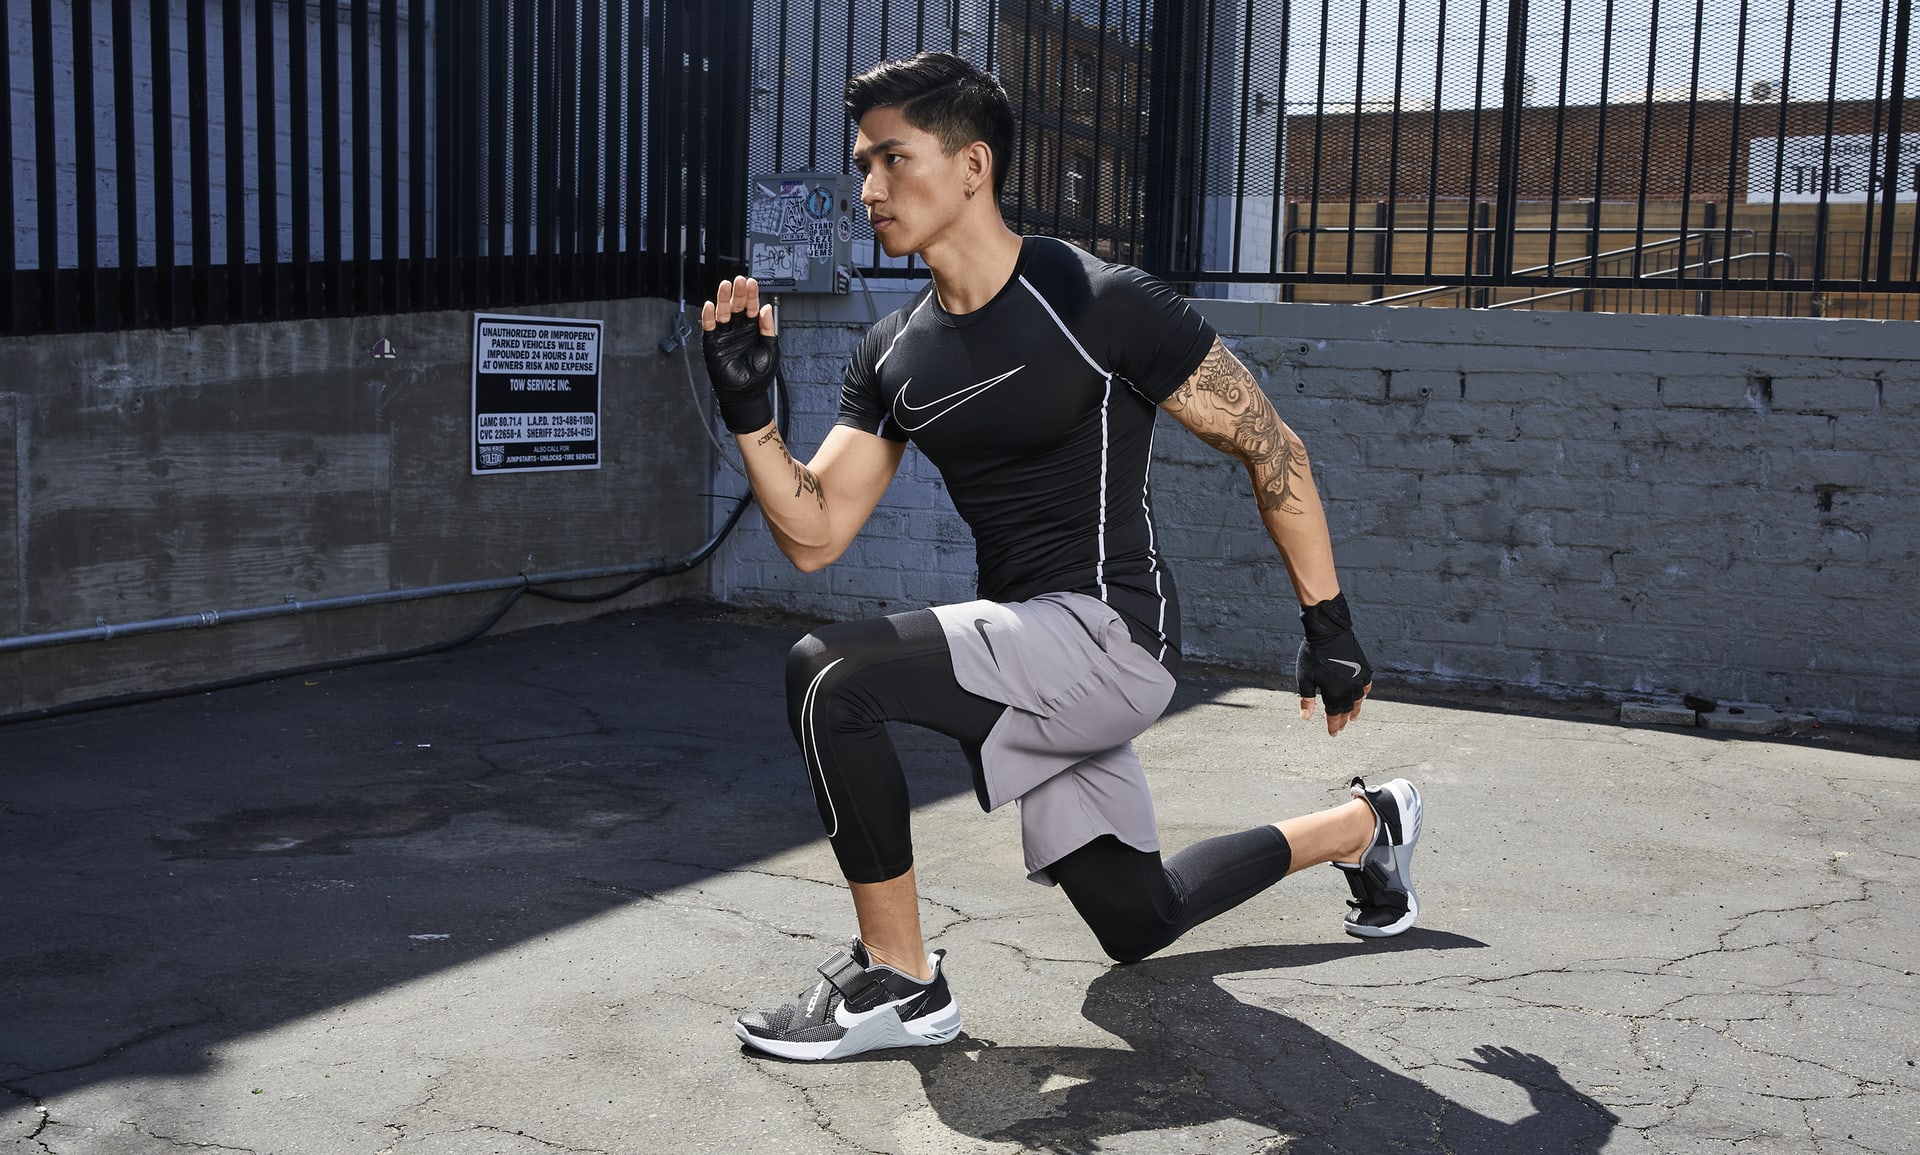 Haut à manches courtes et coupe ajustée Nike Pro Dri-FIT pour Homme